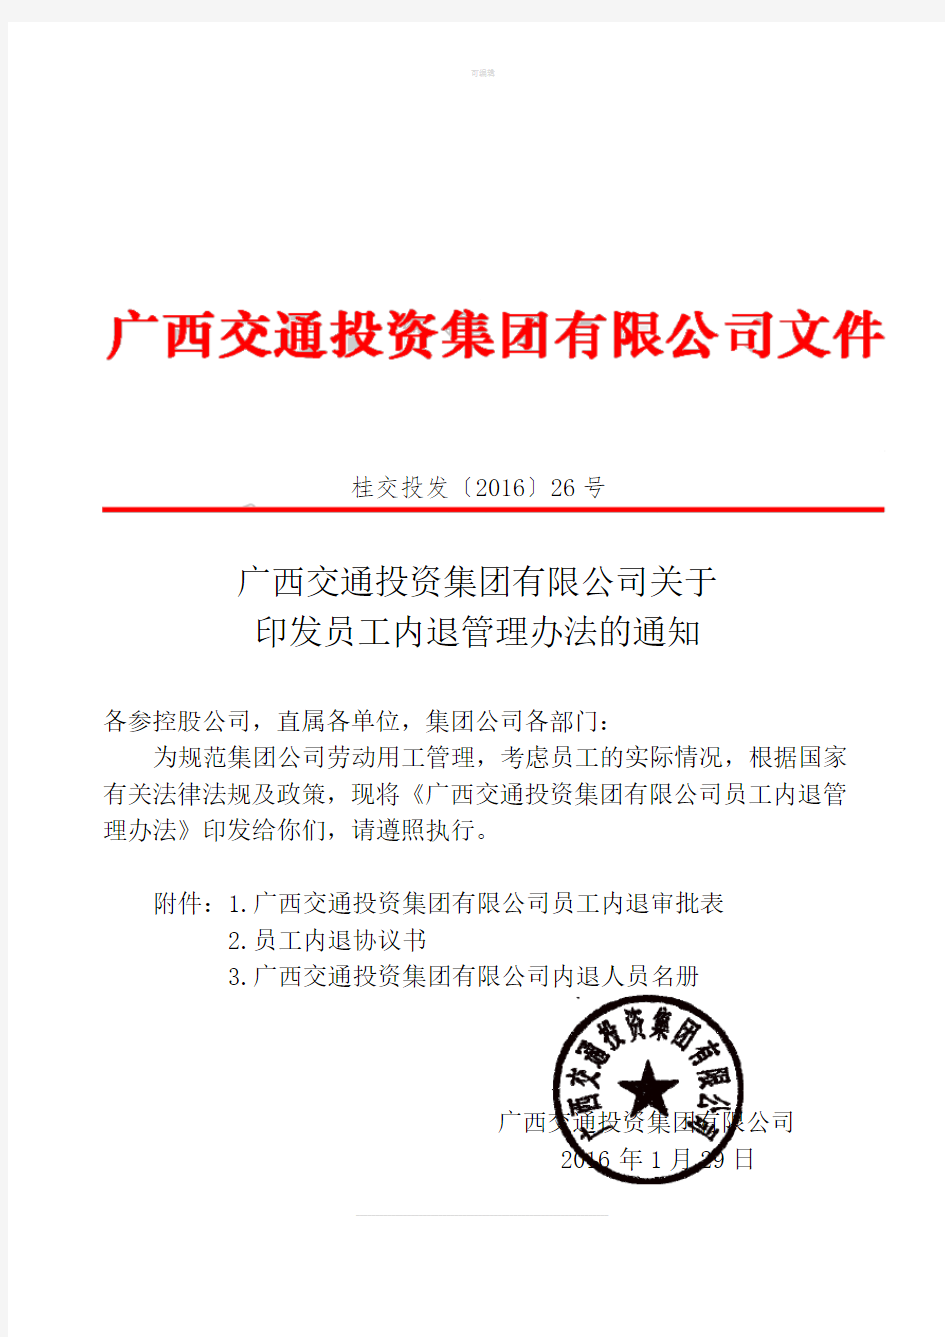 广西交通投资集团有限公司关于印发员工内退管理办法的通知